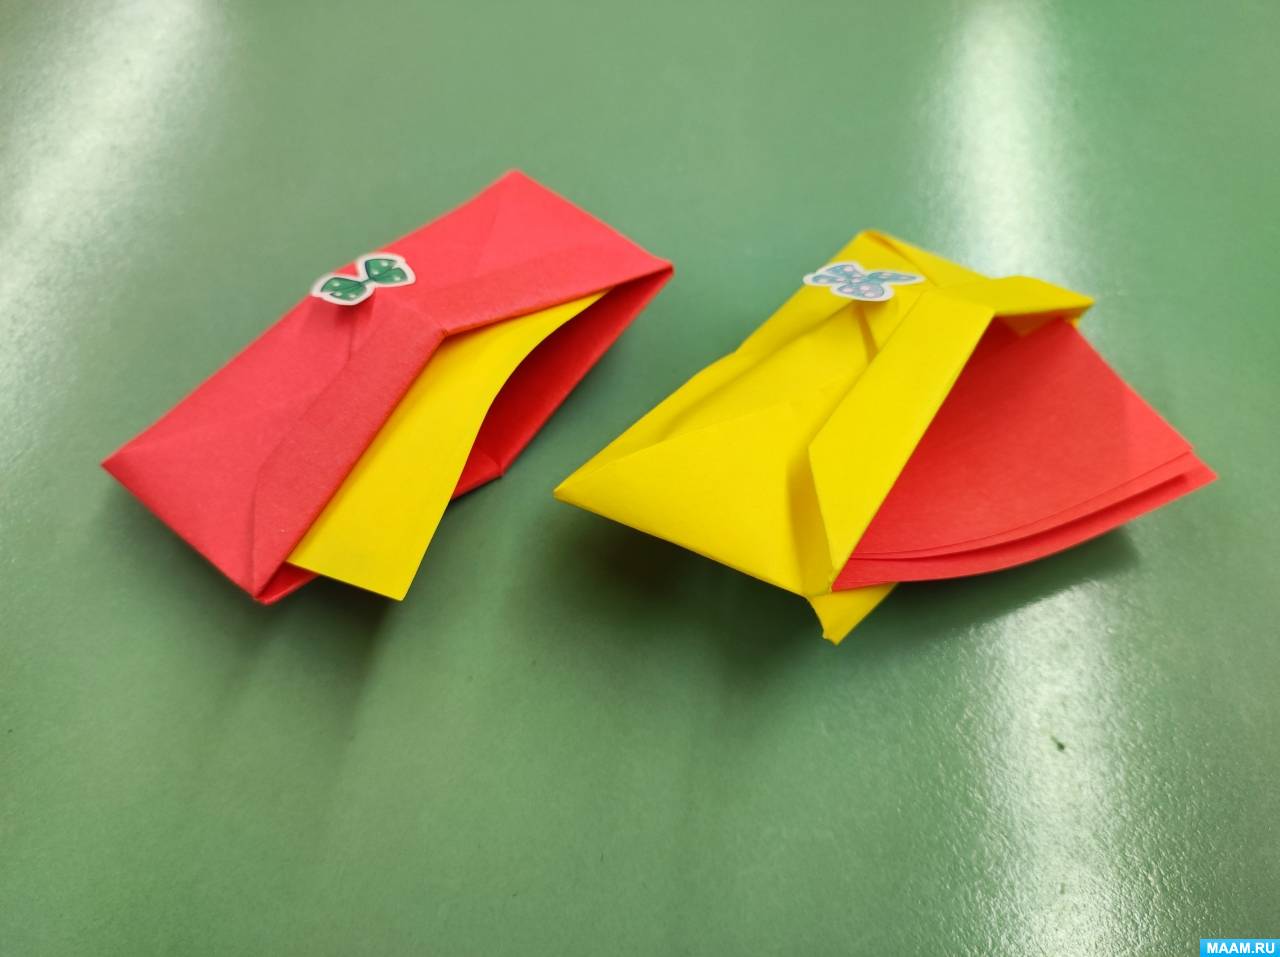 Проект «Волшебный мир оригами в развитии детей» | Василькова Марина Александровна. Работа №290596